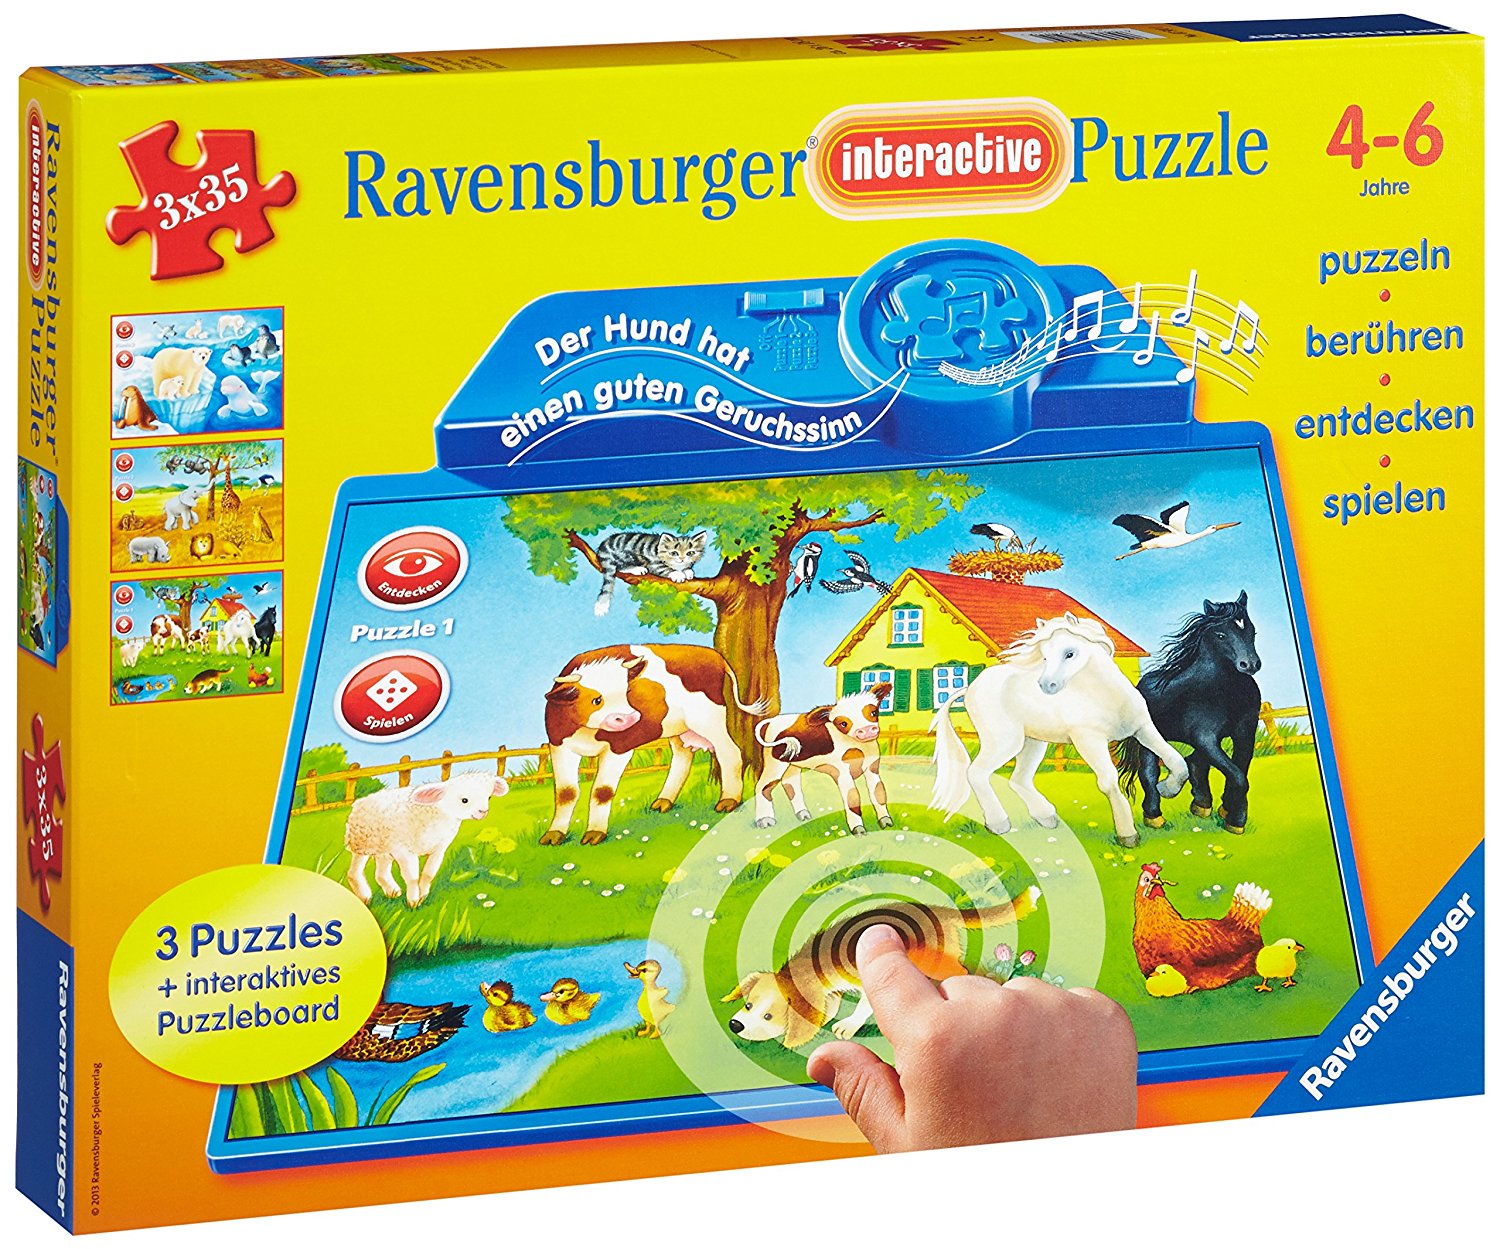 Ravensburger 07501 - Tiere dieser Welt - interactive Puzzle, 3 x 35 Teile